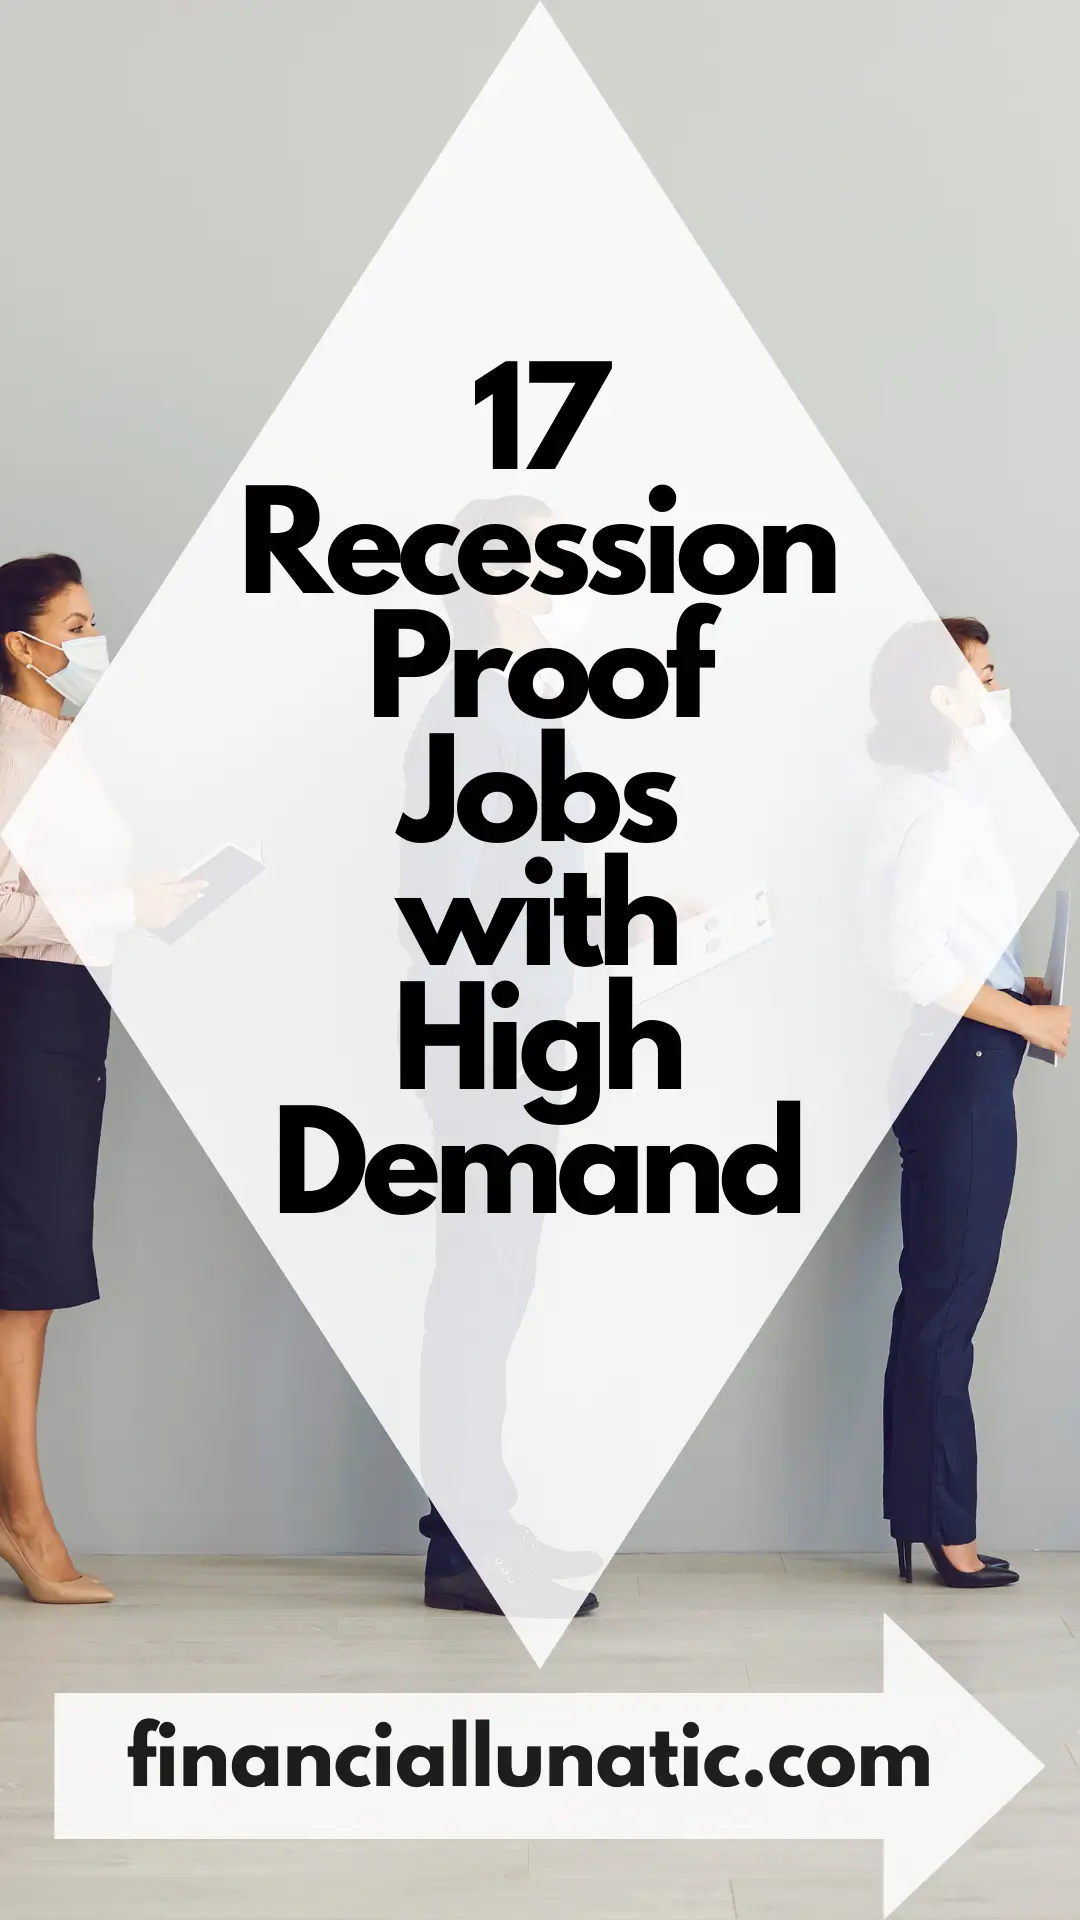 Recession proof jobs